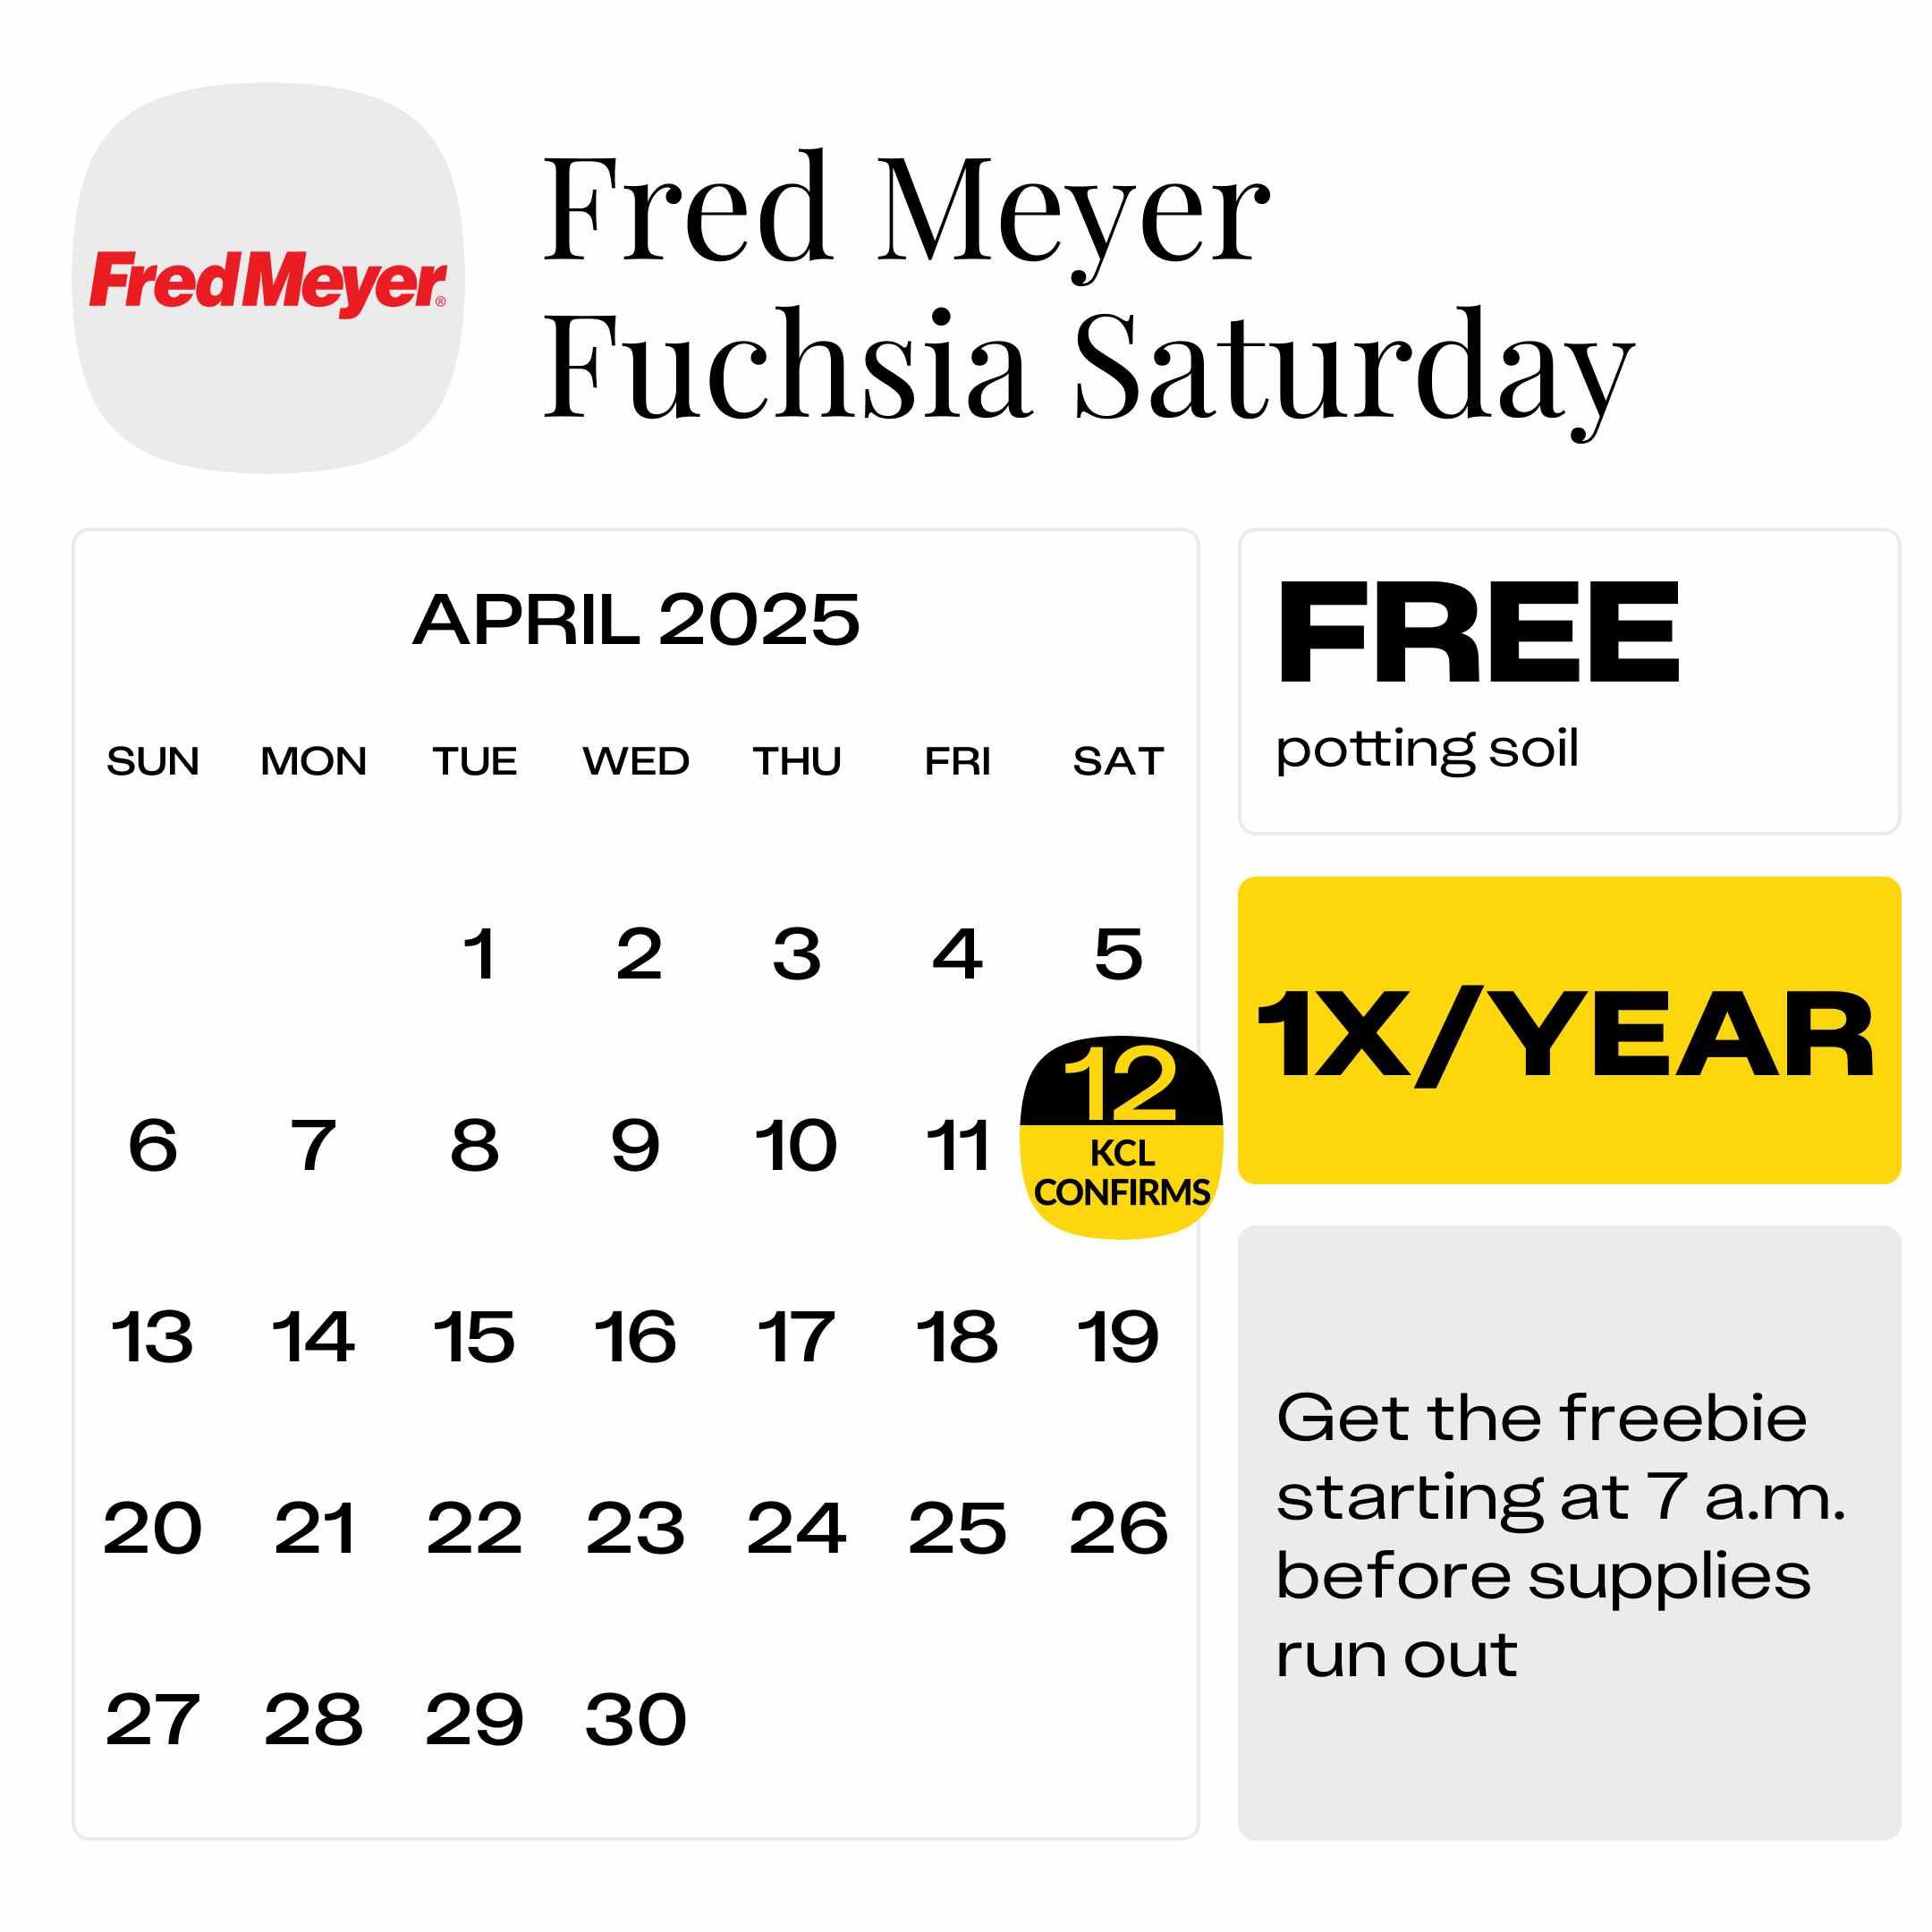 Fred-Meyer-Fuchsia-Saturday-2025-confirmed